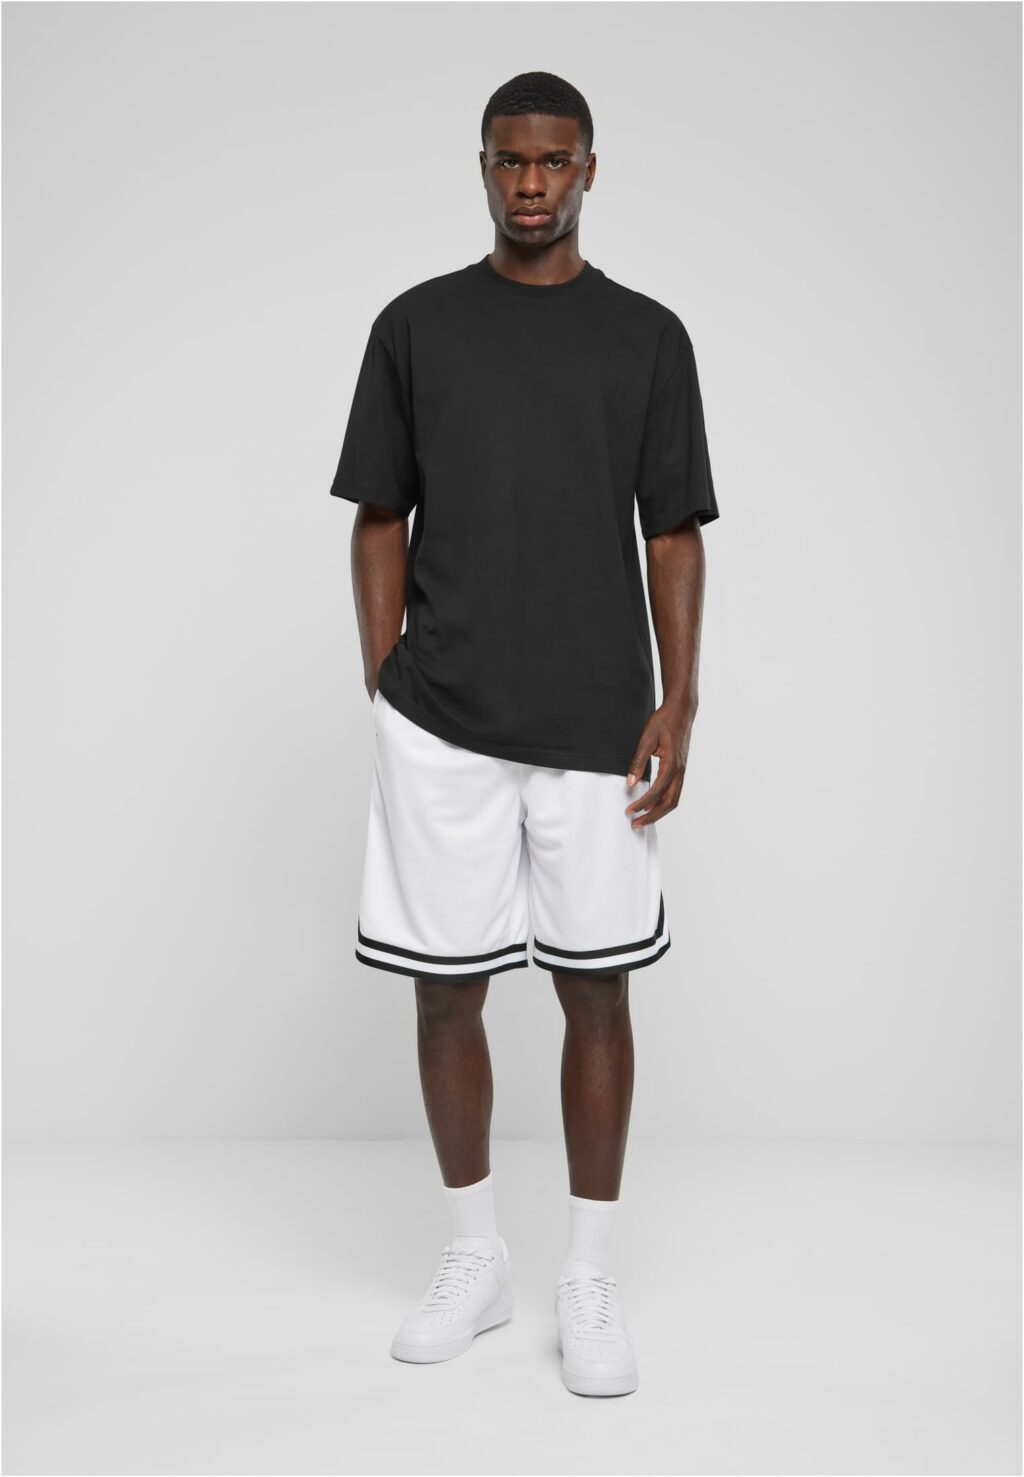 Urban Classics Stripes Mesh Shorts white/black/white TB243